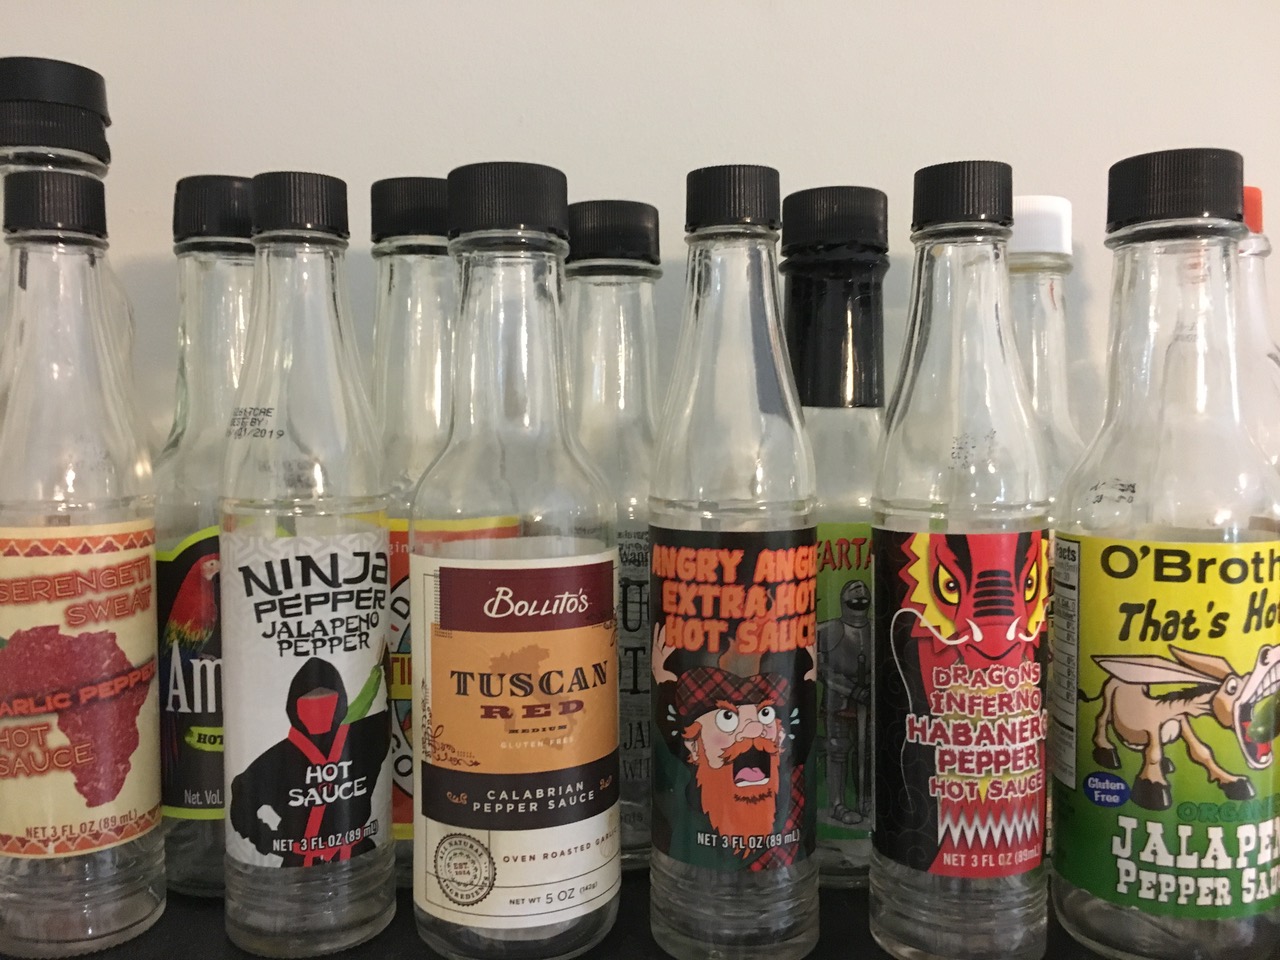 Alexander's hot sauce bottles.